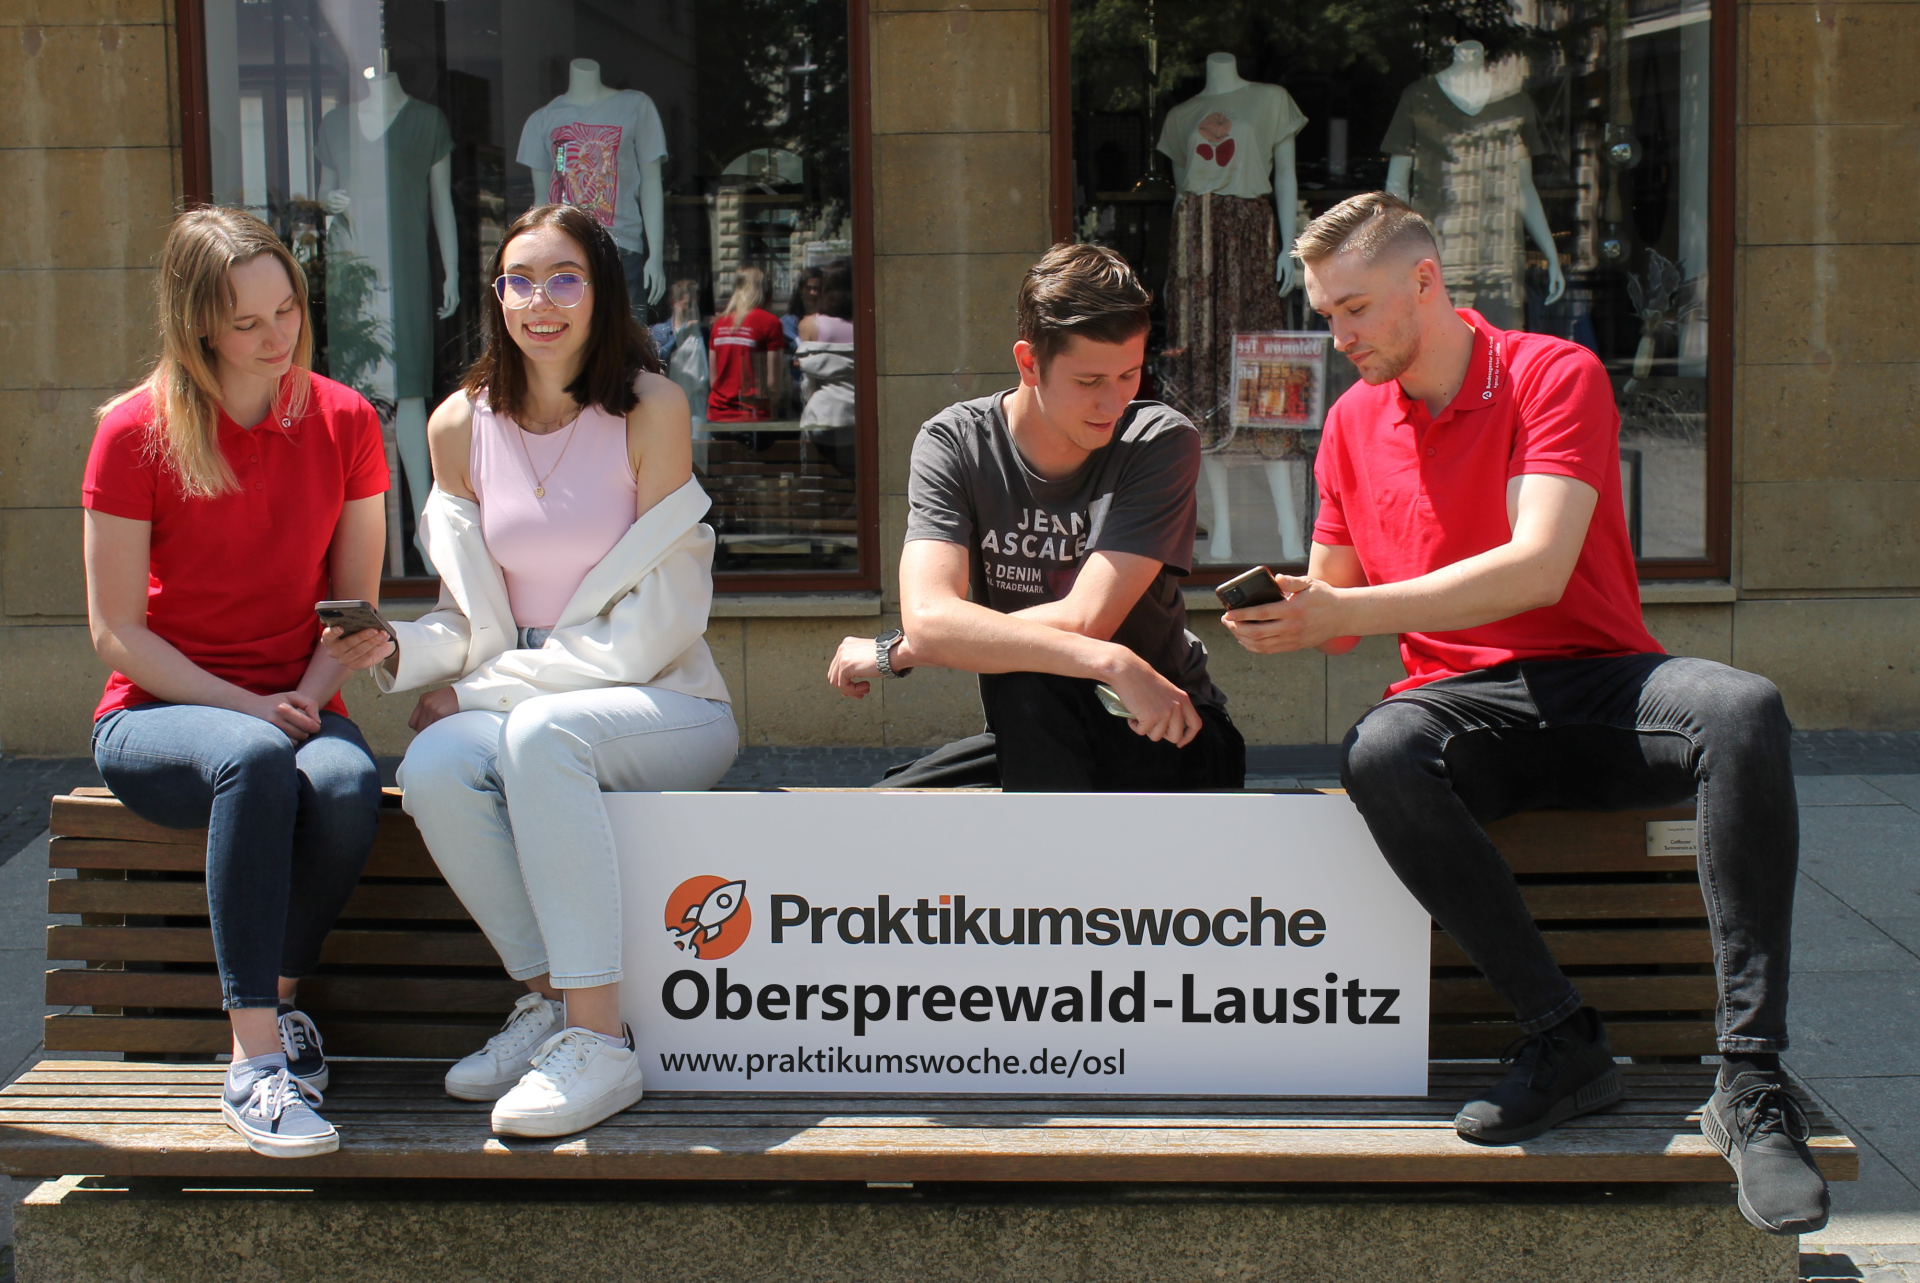 Schüler und Unternehmen im Landkreis OSL können sich jetzt zur „Praktikumswoche“ anmelden unter www.praktikumswoche.de/osl (Bild: Agentur für Arbeit)